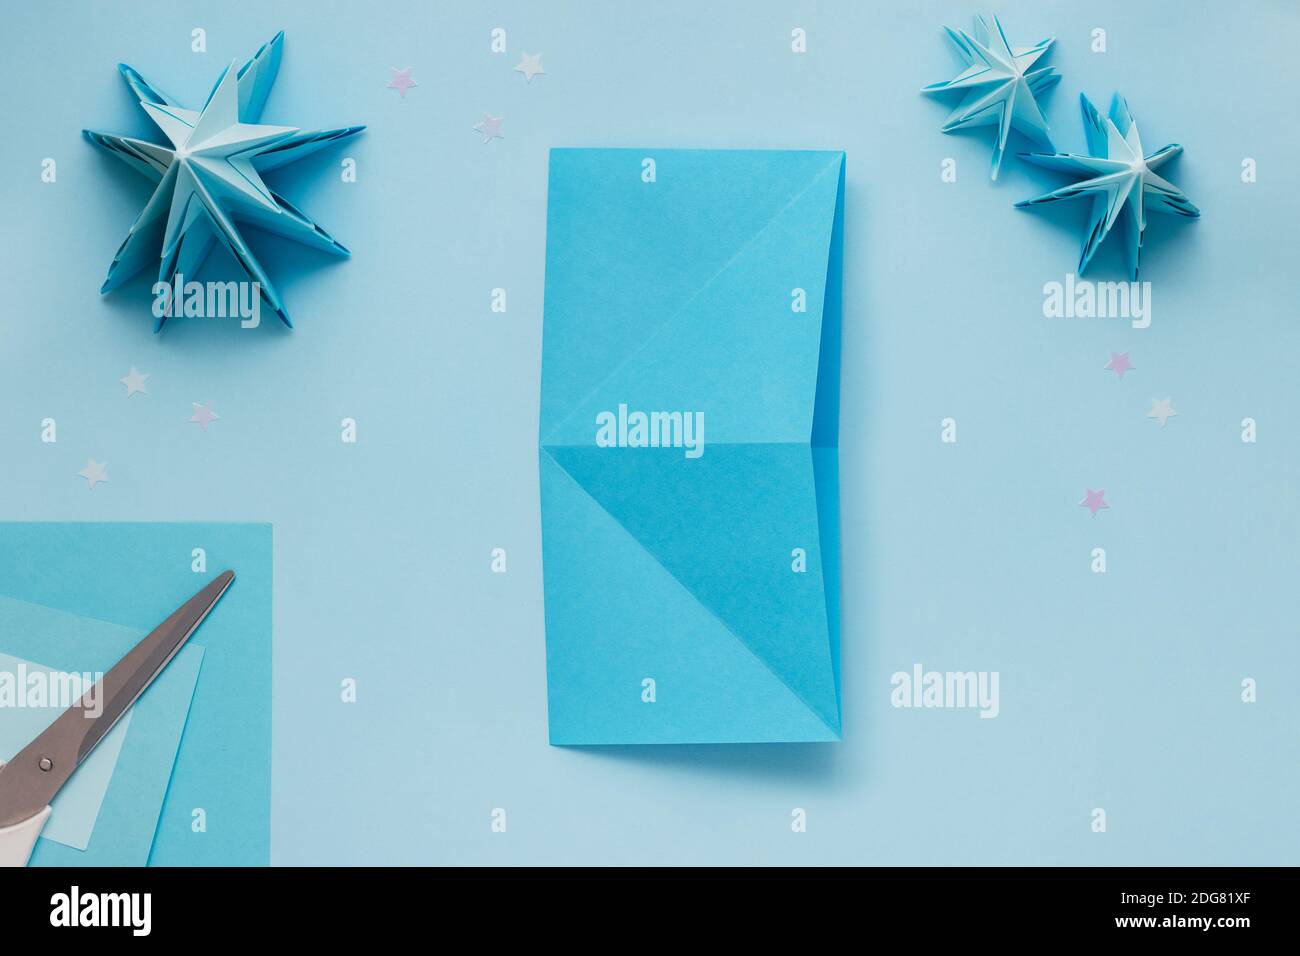 Semplice albero di Natale 3D origami fatto di carta blu. Istruzioni passo passo, passo 5. Distendere il foglio ruotandolo di 90 gradi e piegarlo nuovamente Foto Stock